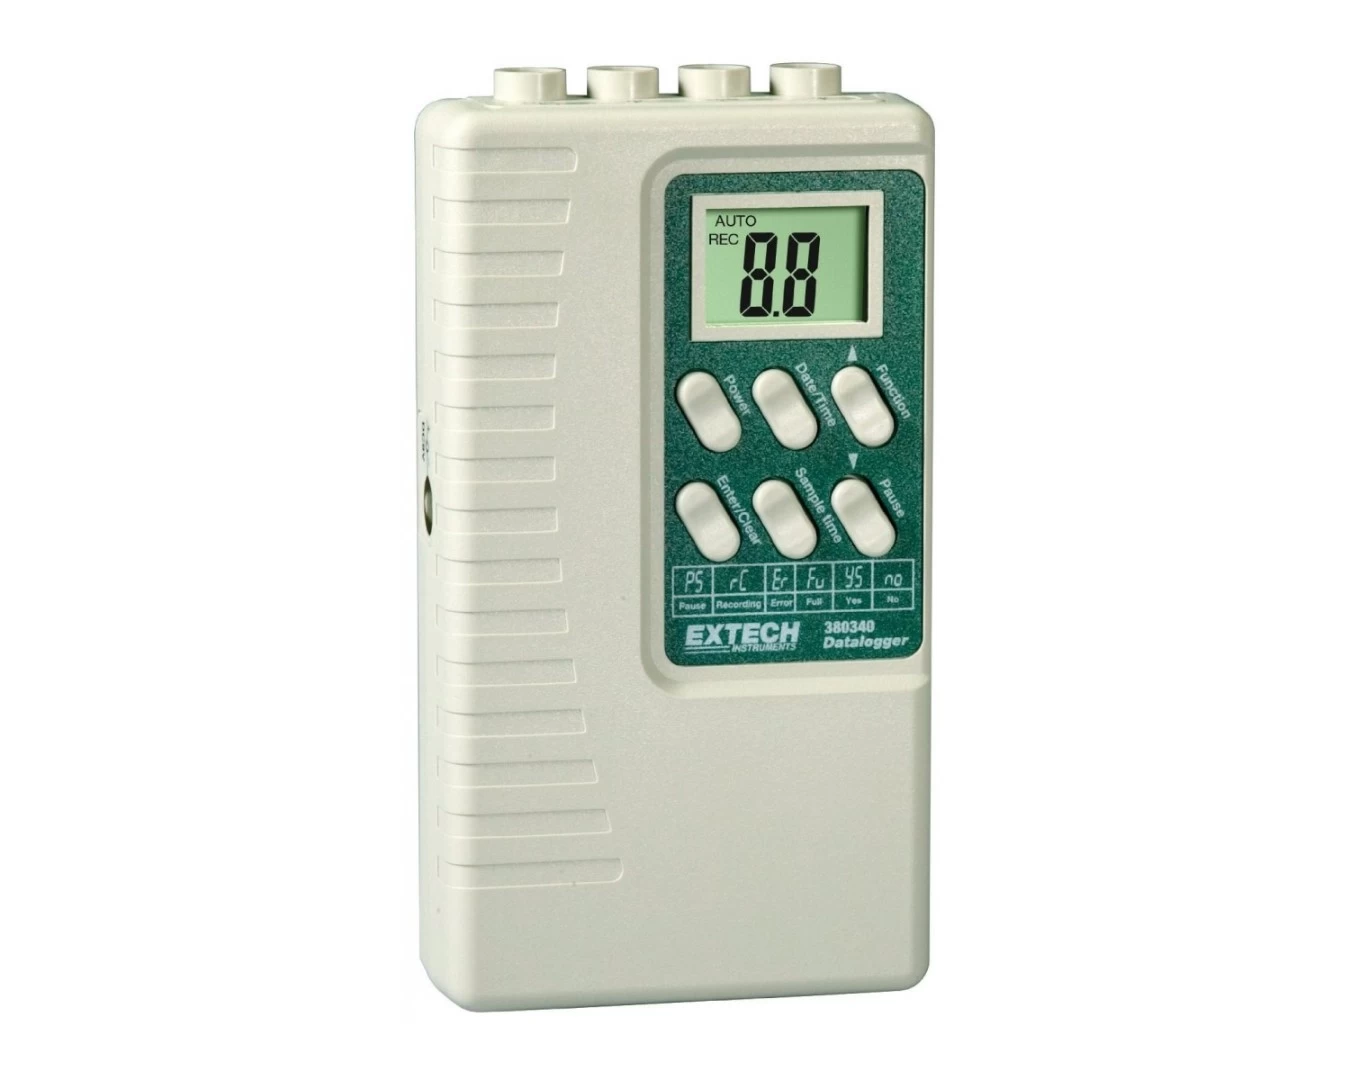 Регистратор данных с питанием от батареи Extech 380340 - 2